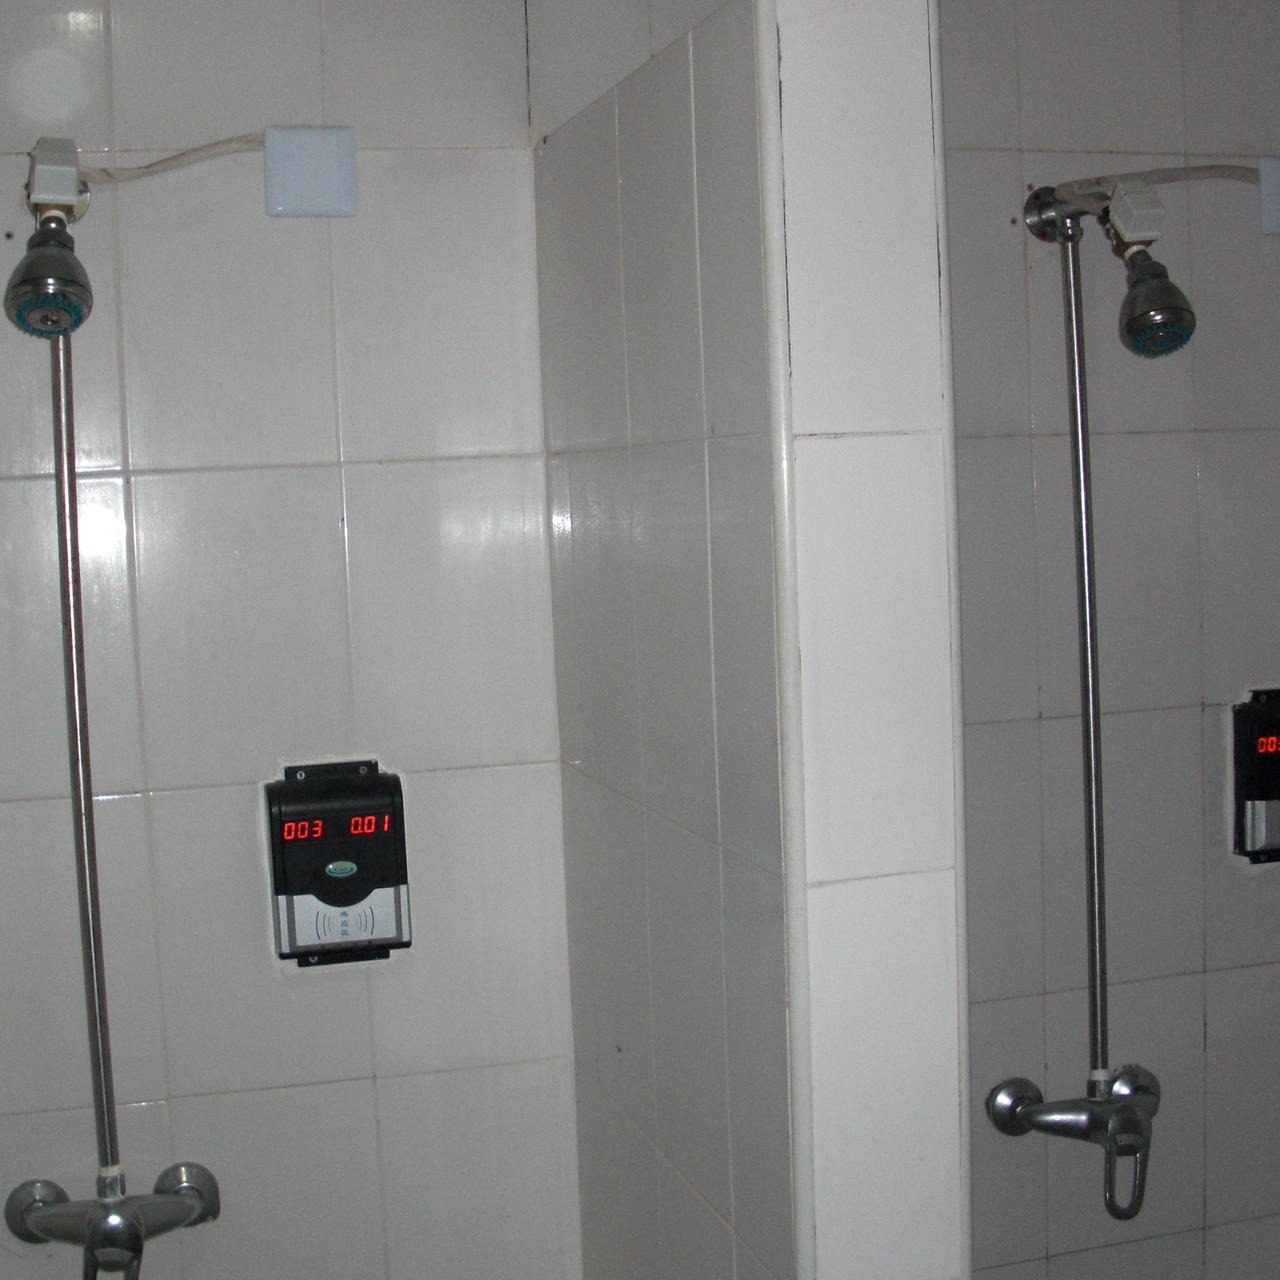 兴天下HF-660IC卡 洗澡刷卡机,淋浴刷卡水控器,ic卡控水器